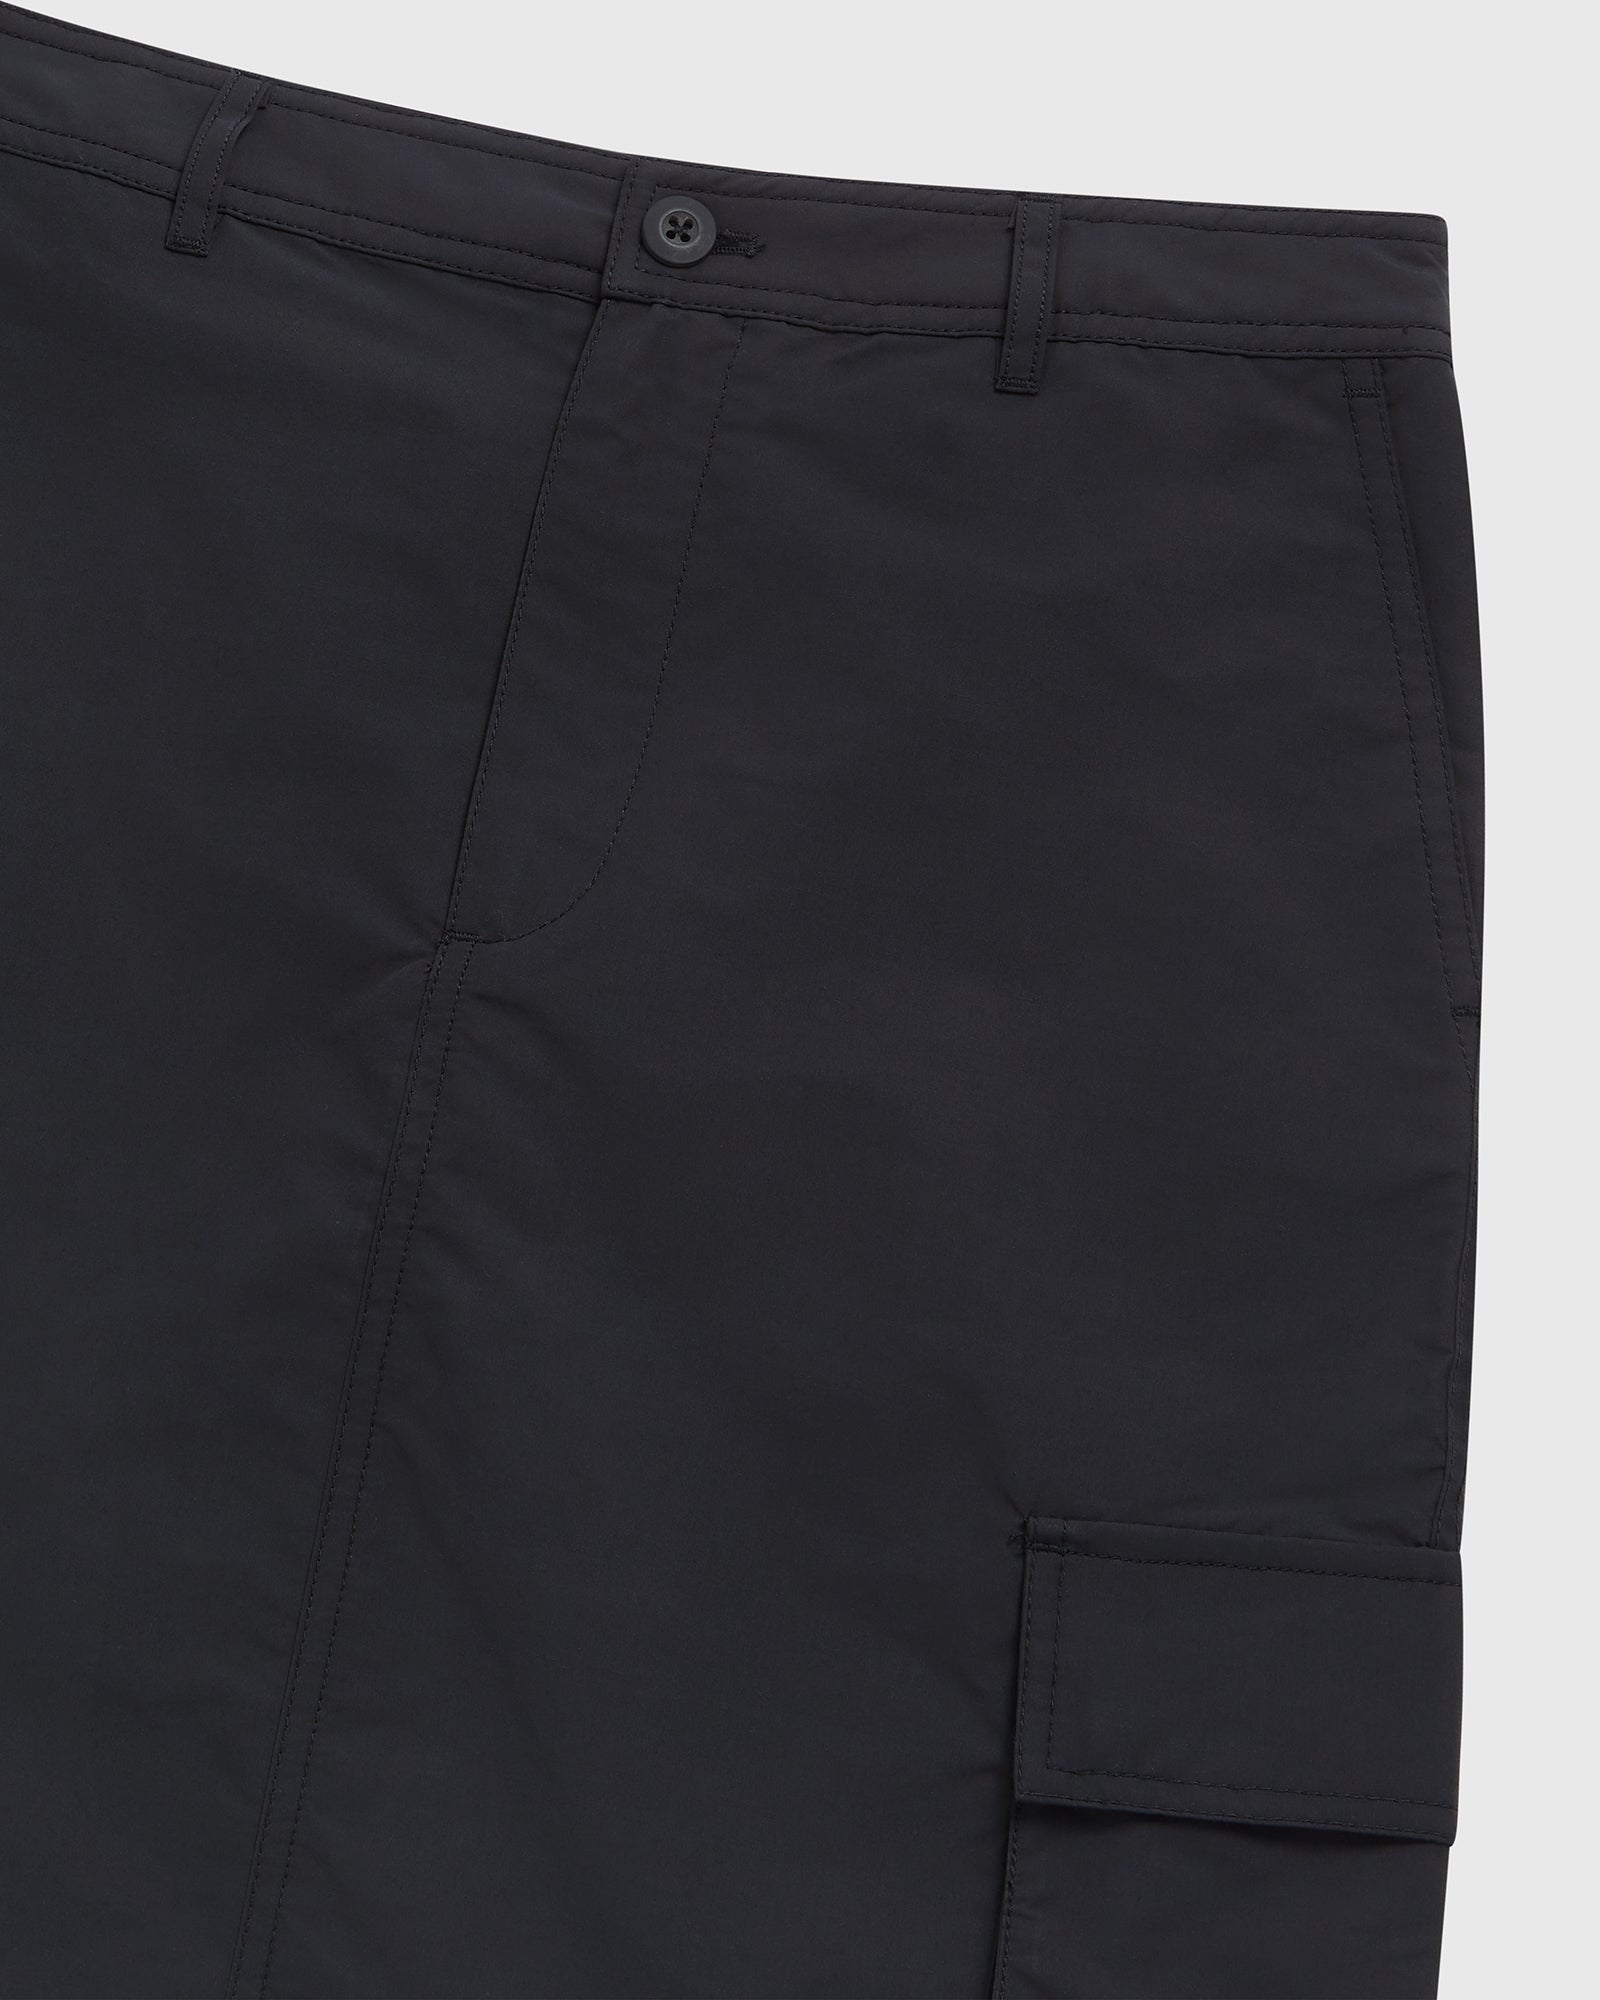 Nylon Cargo Skirt - Black